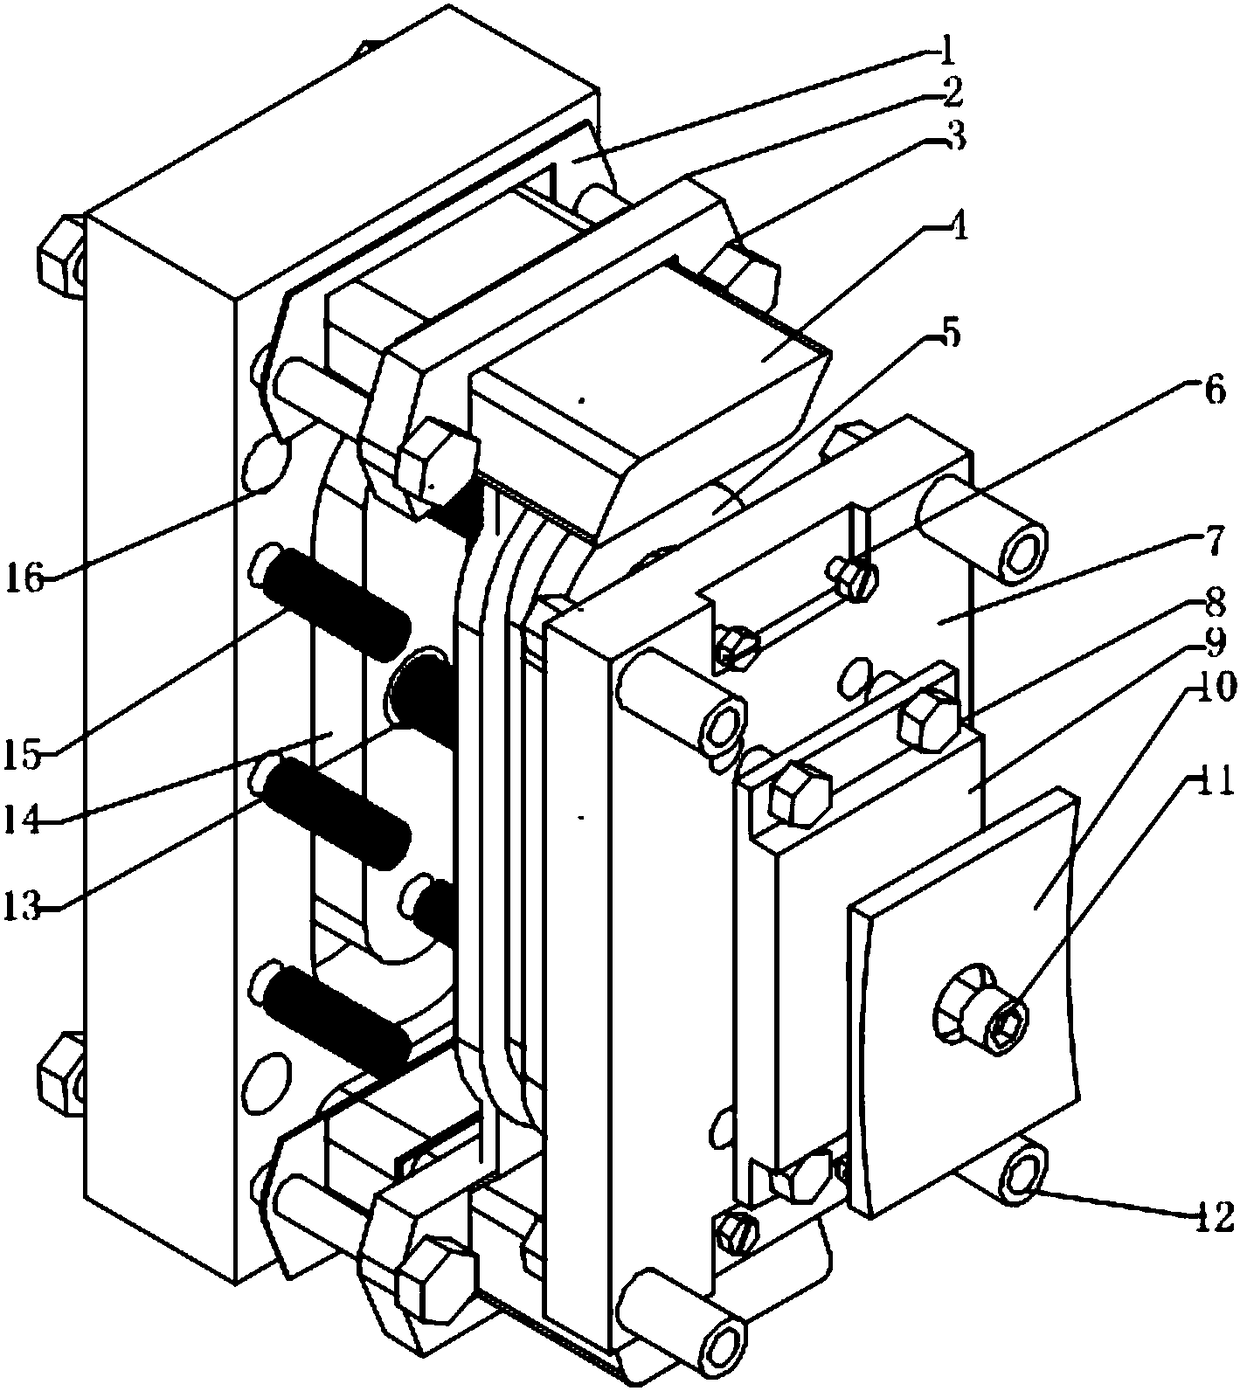 Elevator brake adopting dual-braking system and braking method of elevator brake